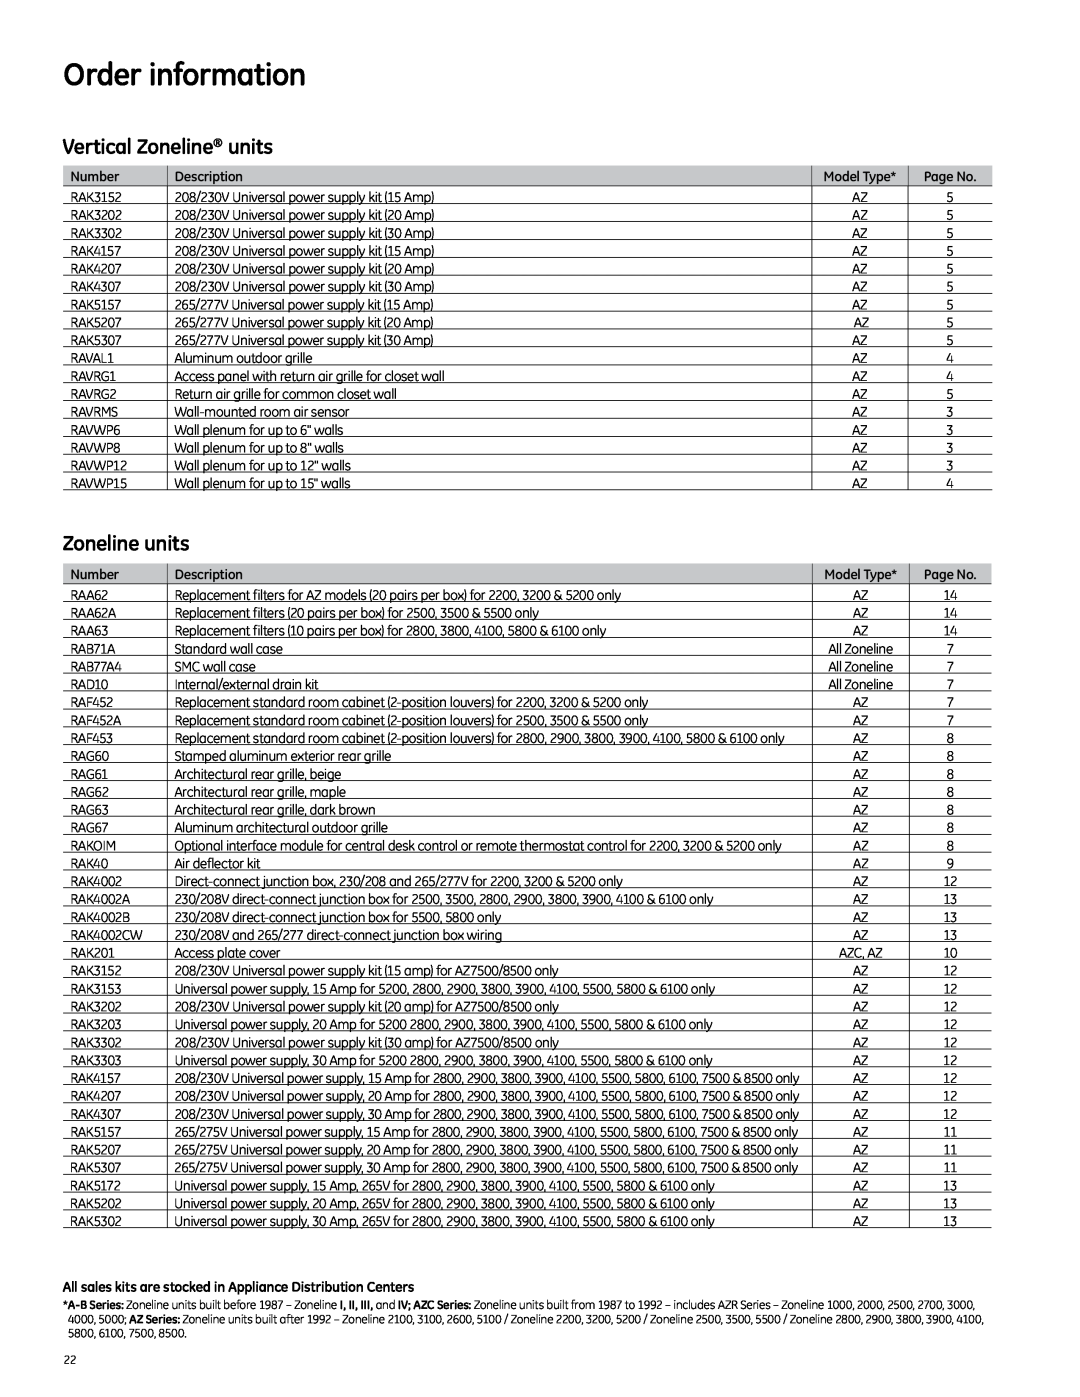 GE 2010 manual Order information, Vertical Zoneline units 